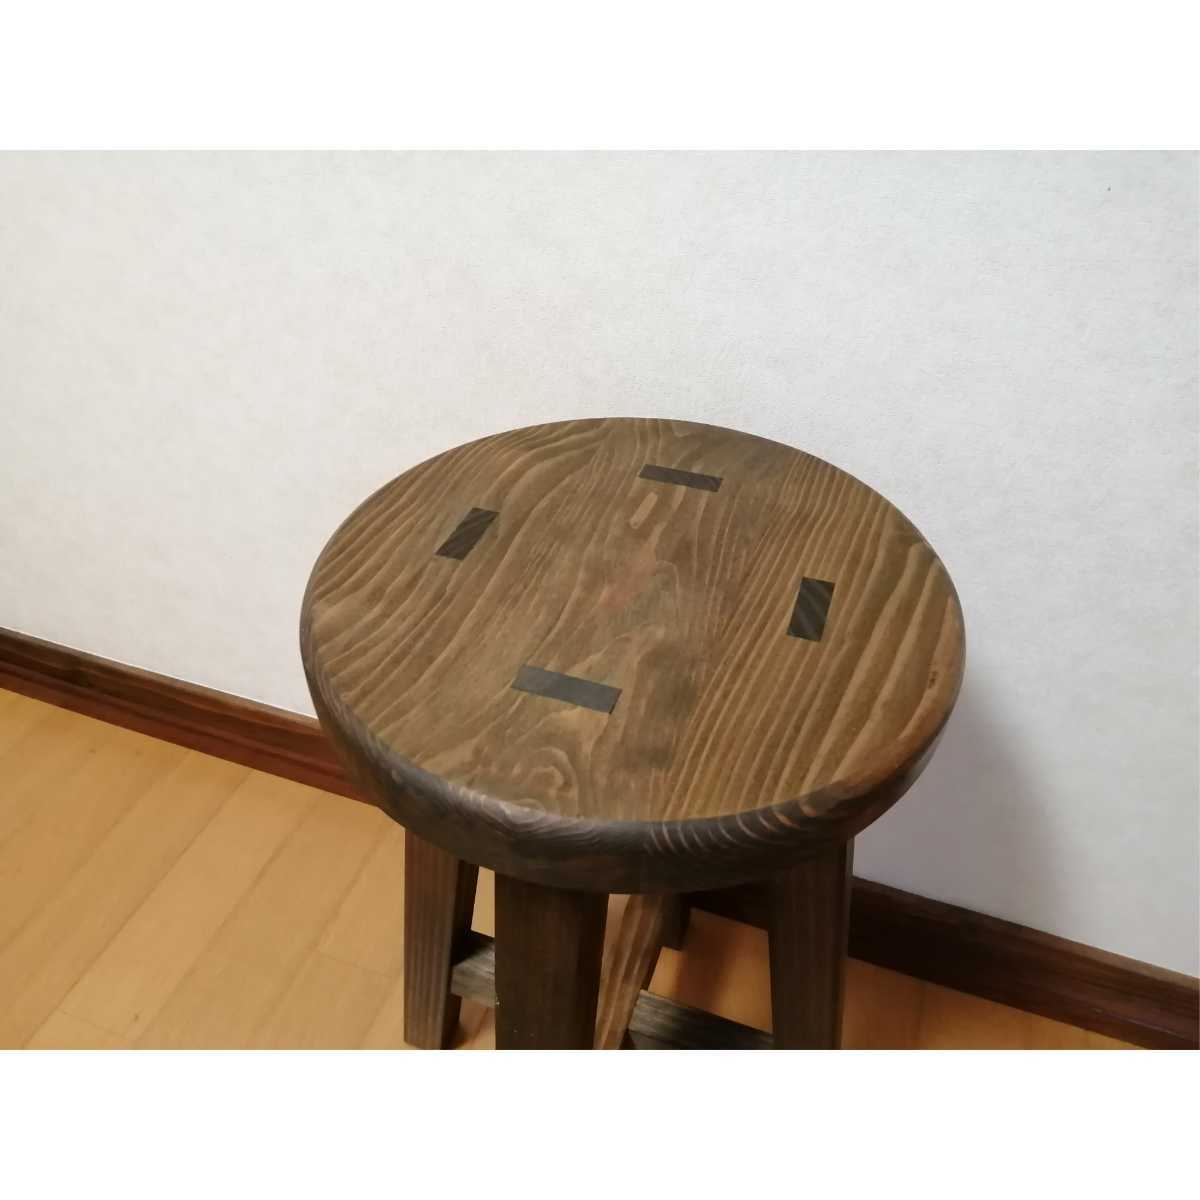 2130円 【人気商品】 木製スツール 高さ40cm 丸椅子 stool